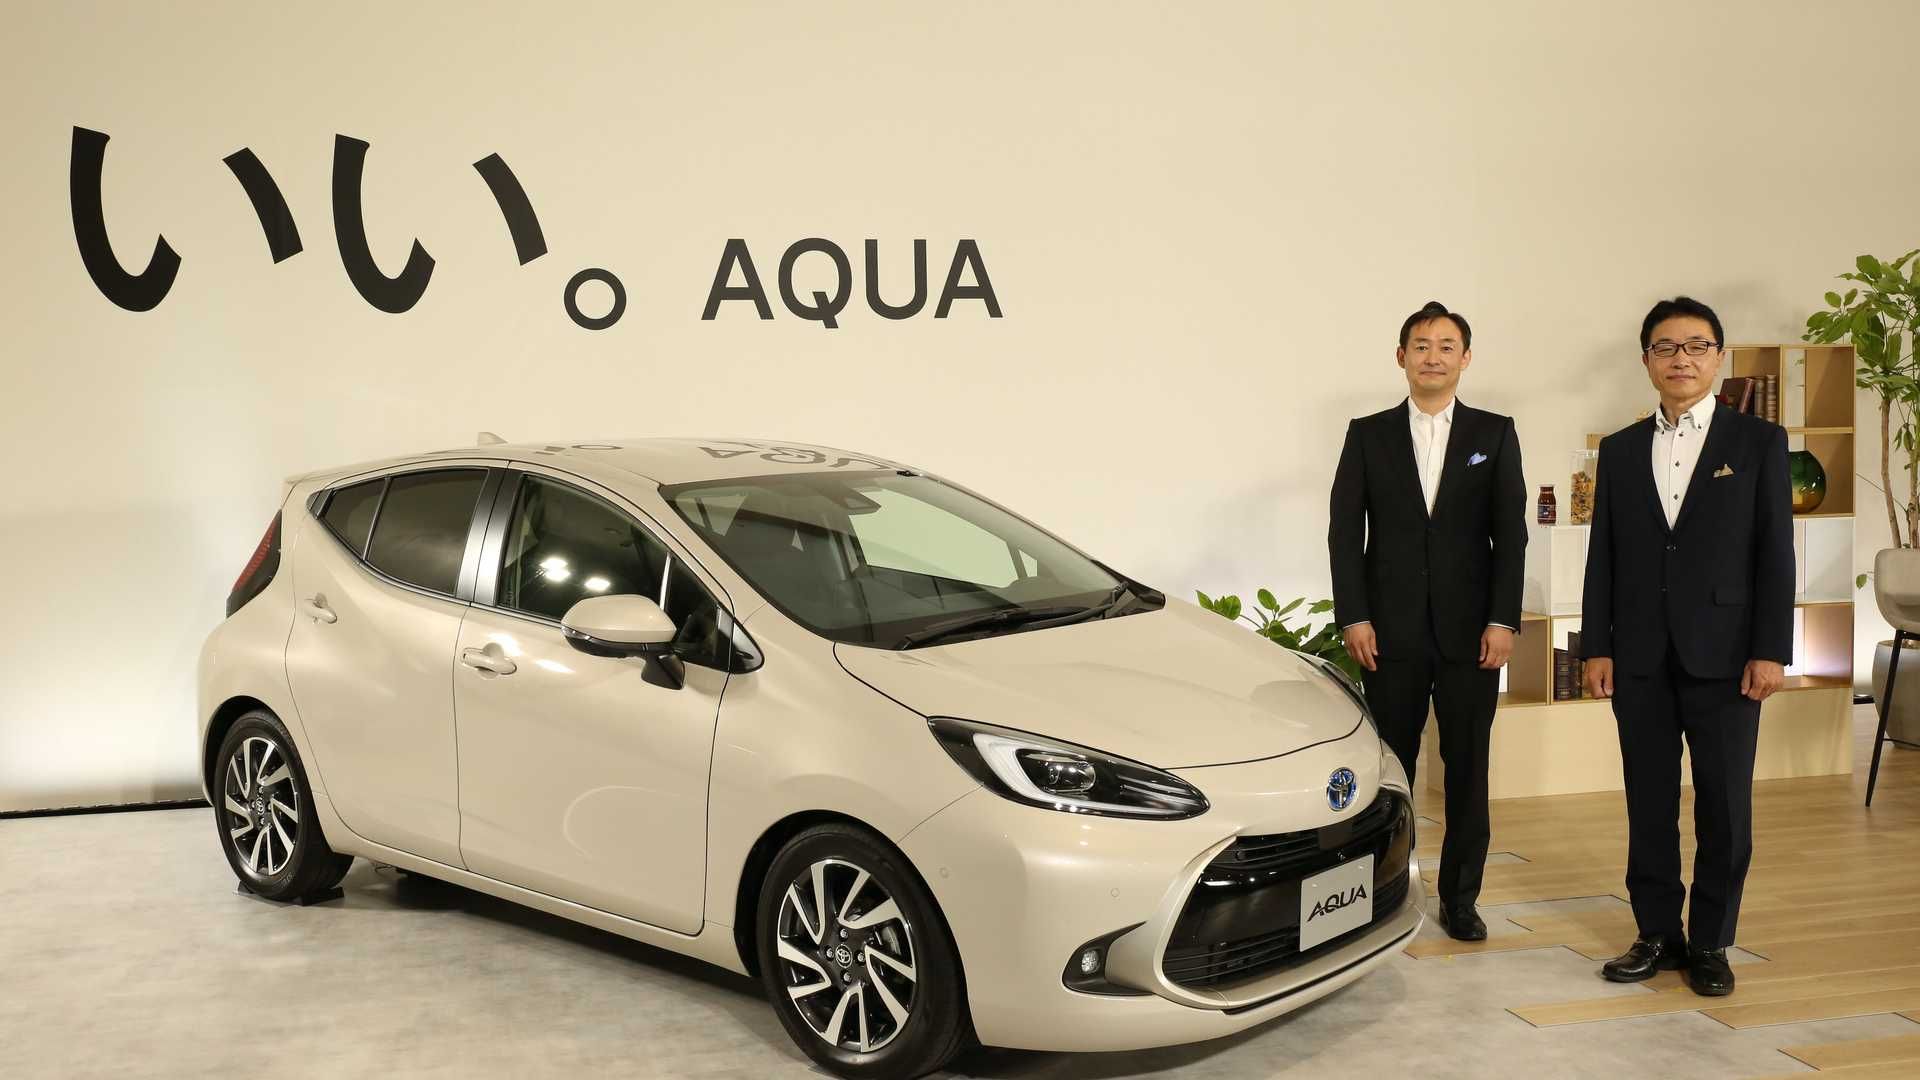 هاچ بک هیبریدی تویوتا آکوا / 2022 Toyota Aqua در کنار مدیران تویوتا